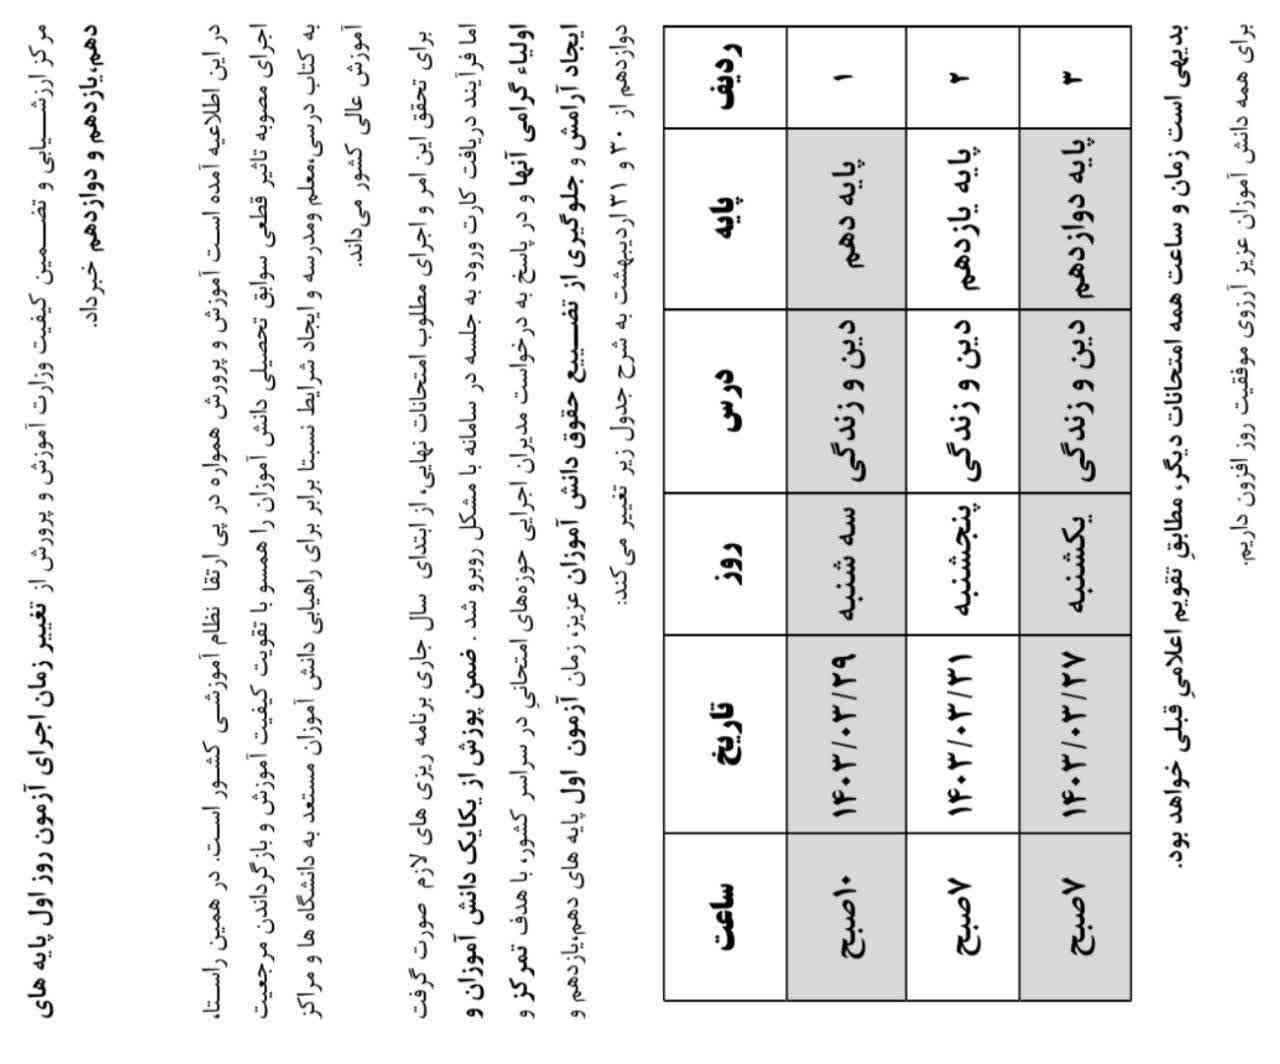  عربی از کجا باید شروع کنم؟ نوبت اول پایانی ۱۳ شدم اونم با تقلب بود  هیچی بلد نیسم 